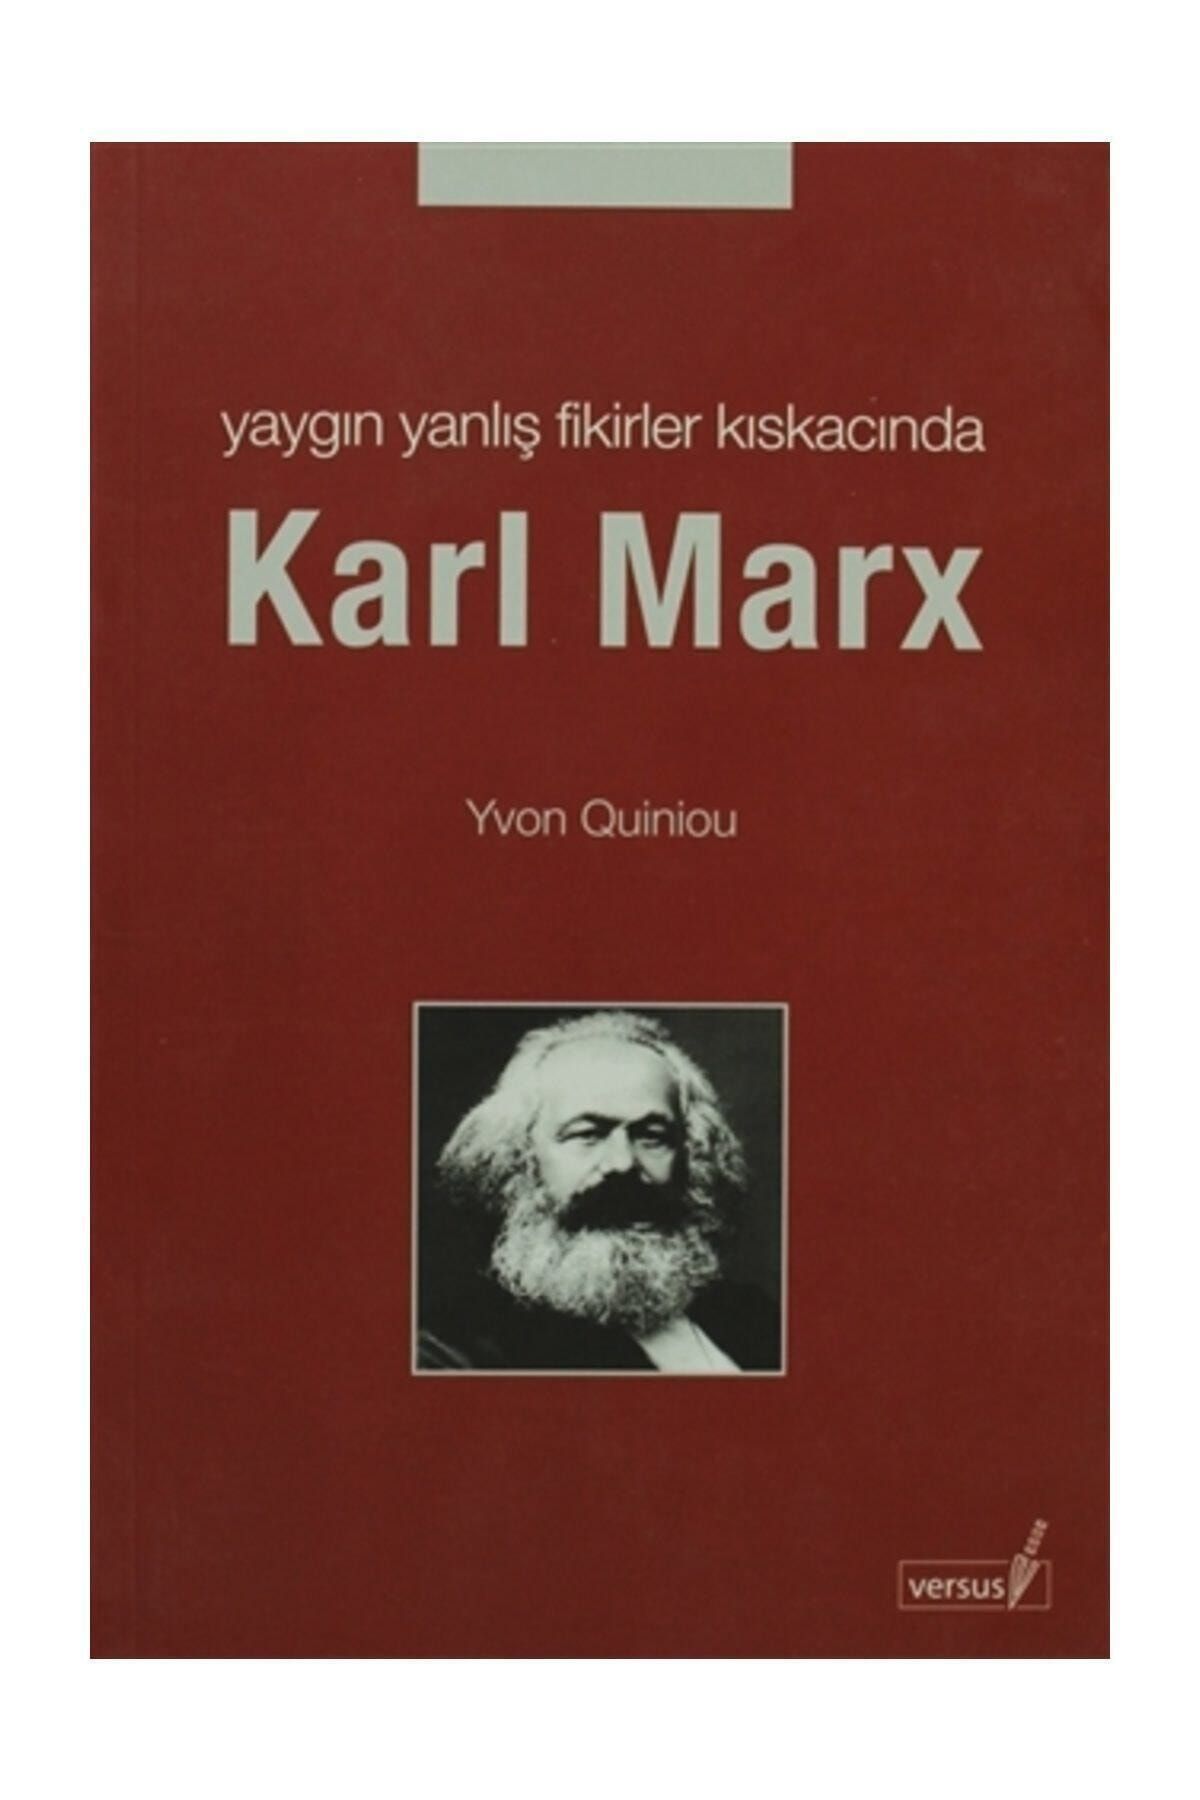 Versus Kitap Yayınları Yaygın Yanlış Fikirler Kıskacında Karl MarX - Yvon Quiniou